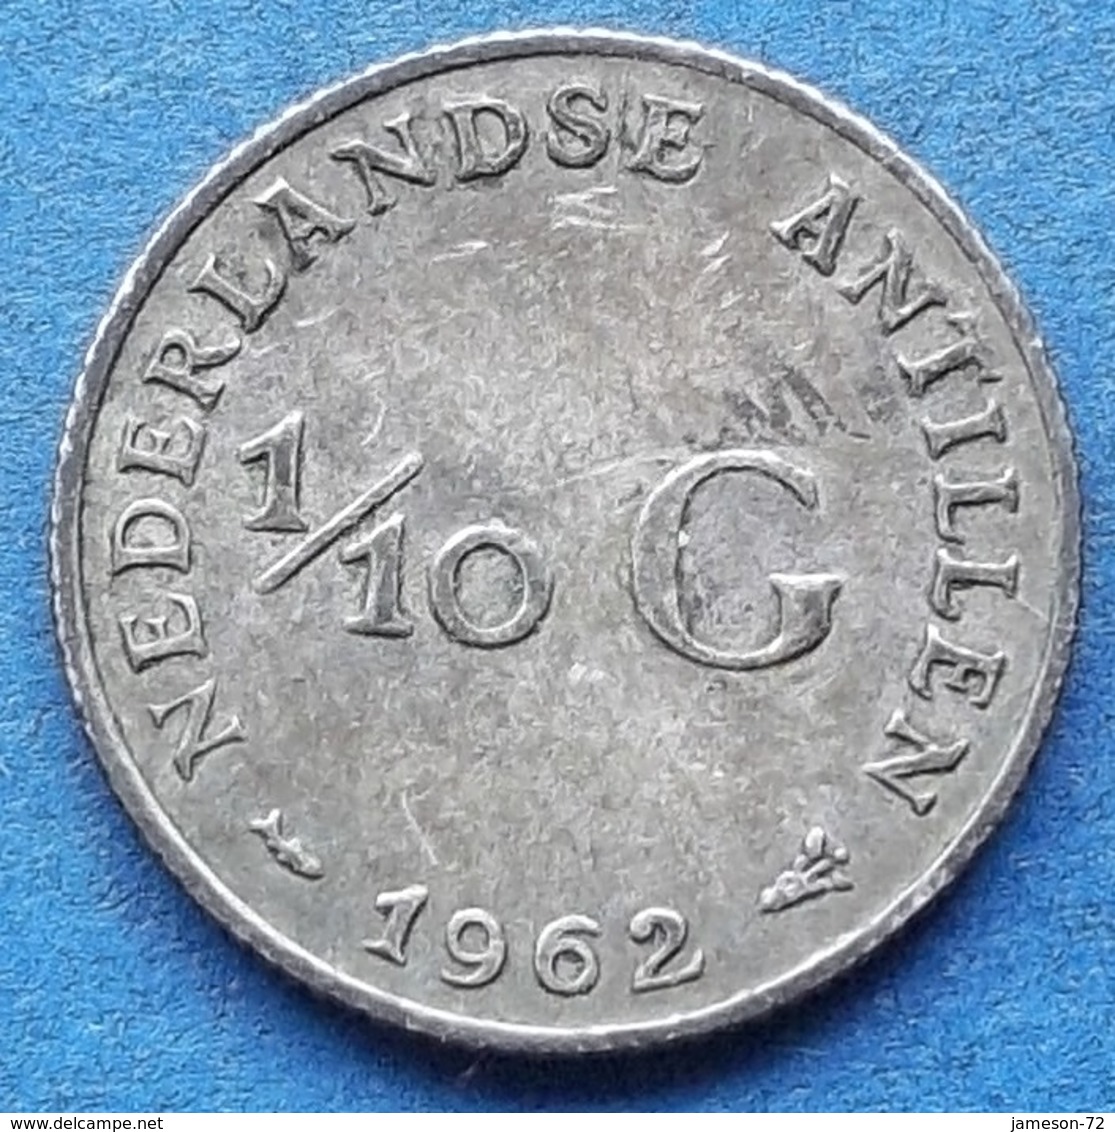 NETHERLANDS ANTILLES - Silver 1/10 Gulden 1962 KM# 3 Juliana - Edelweiss Coins - Netherlands Antilles